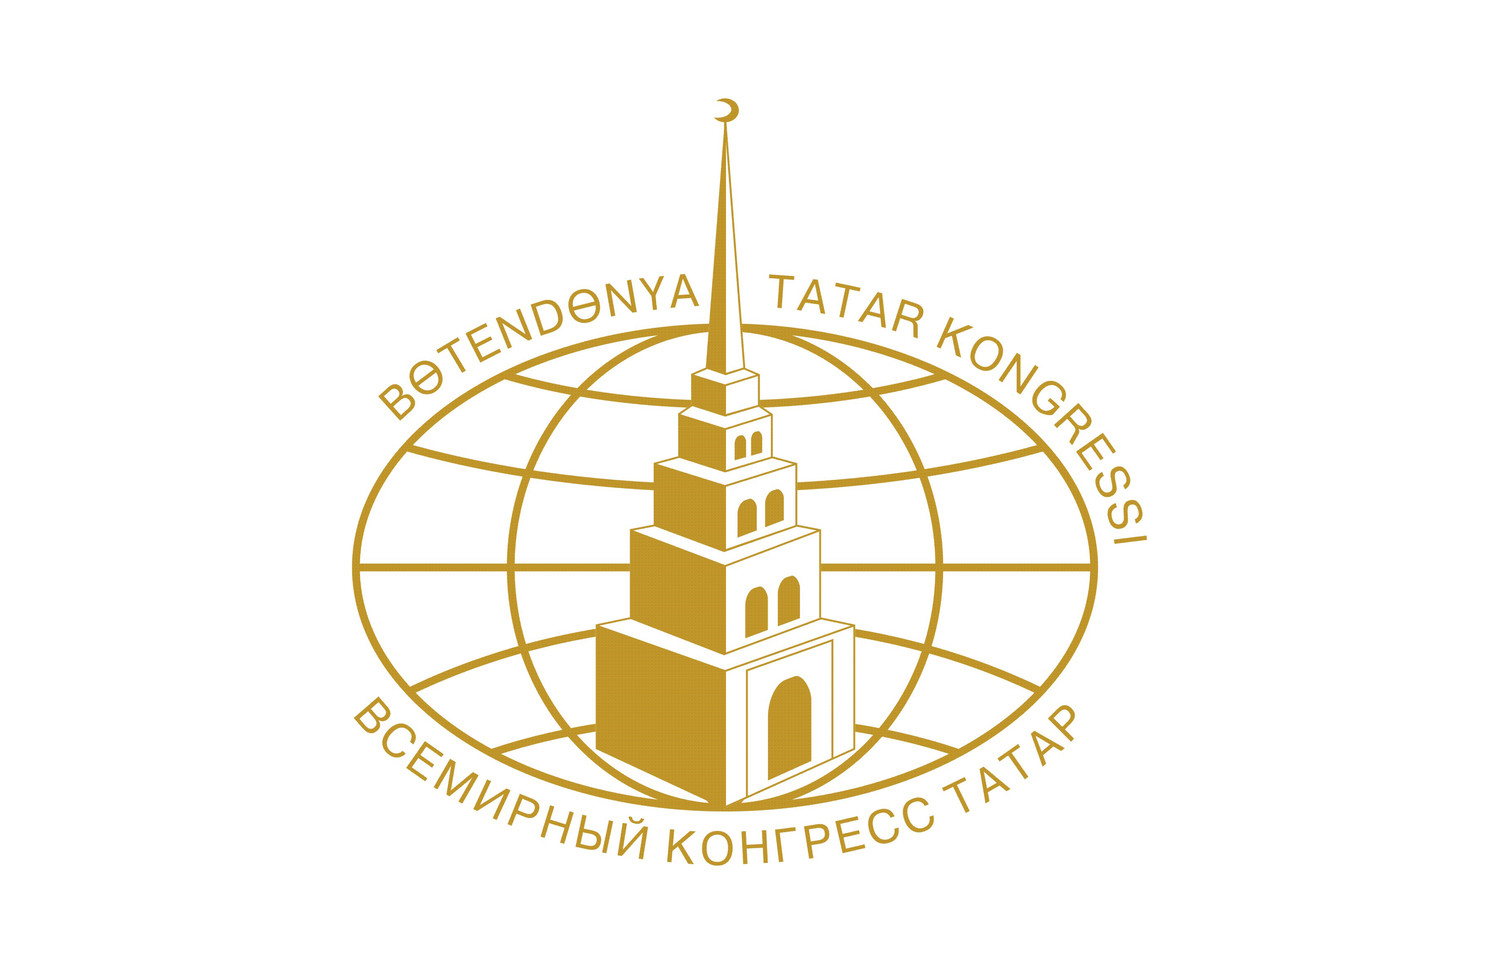 Шестой съезд Всемирного конгресса татар начал работу